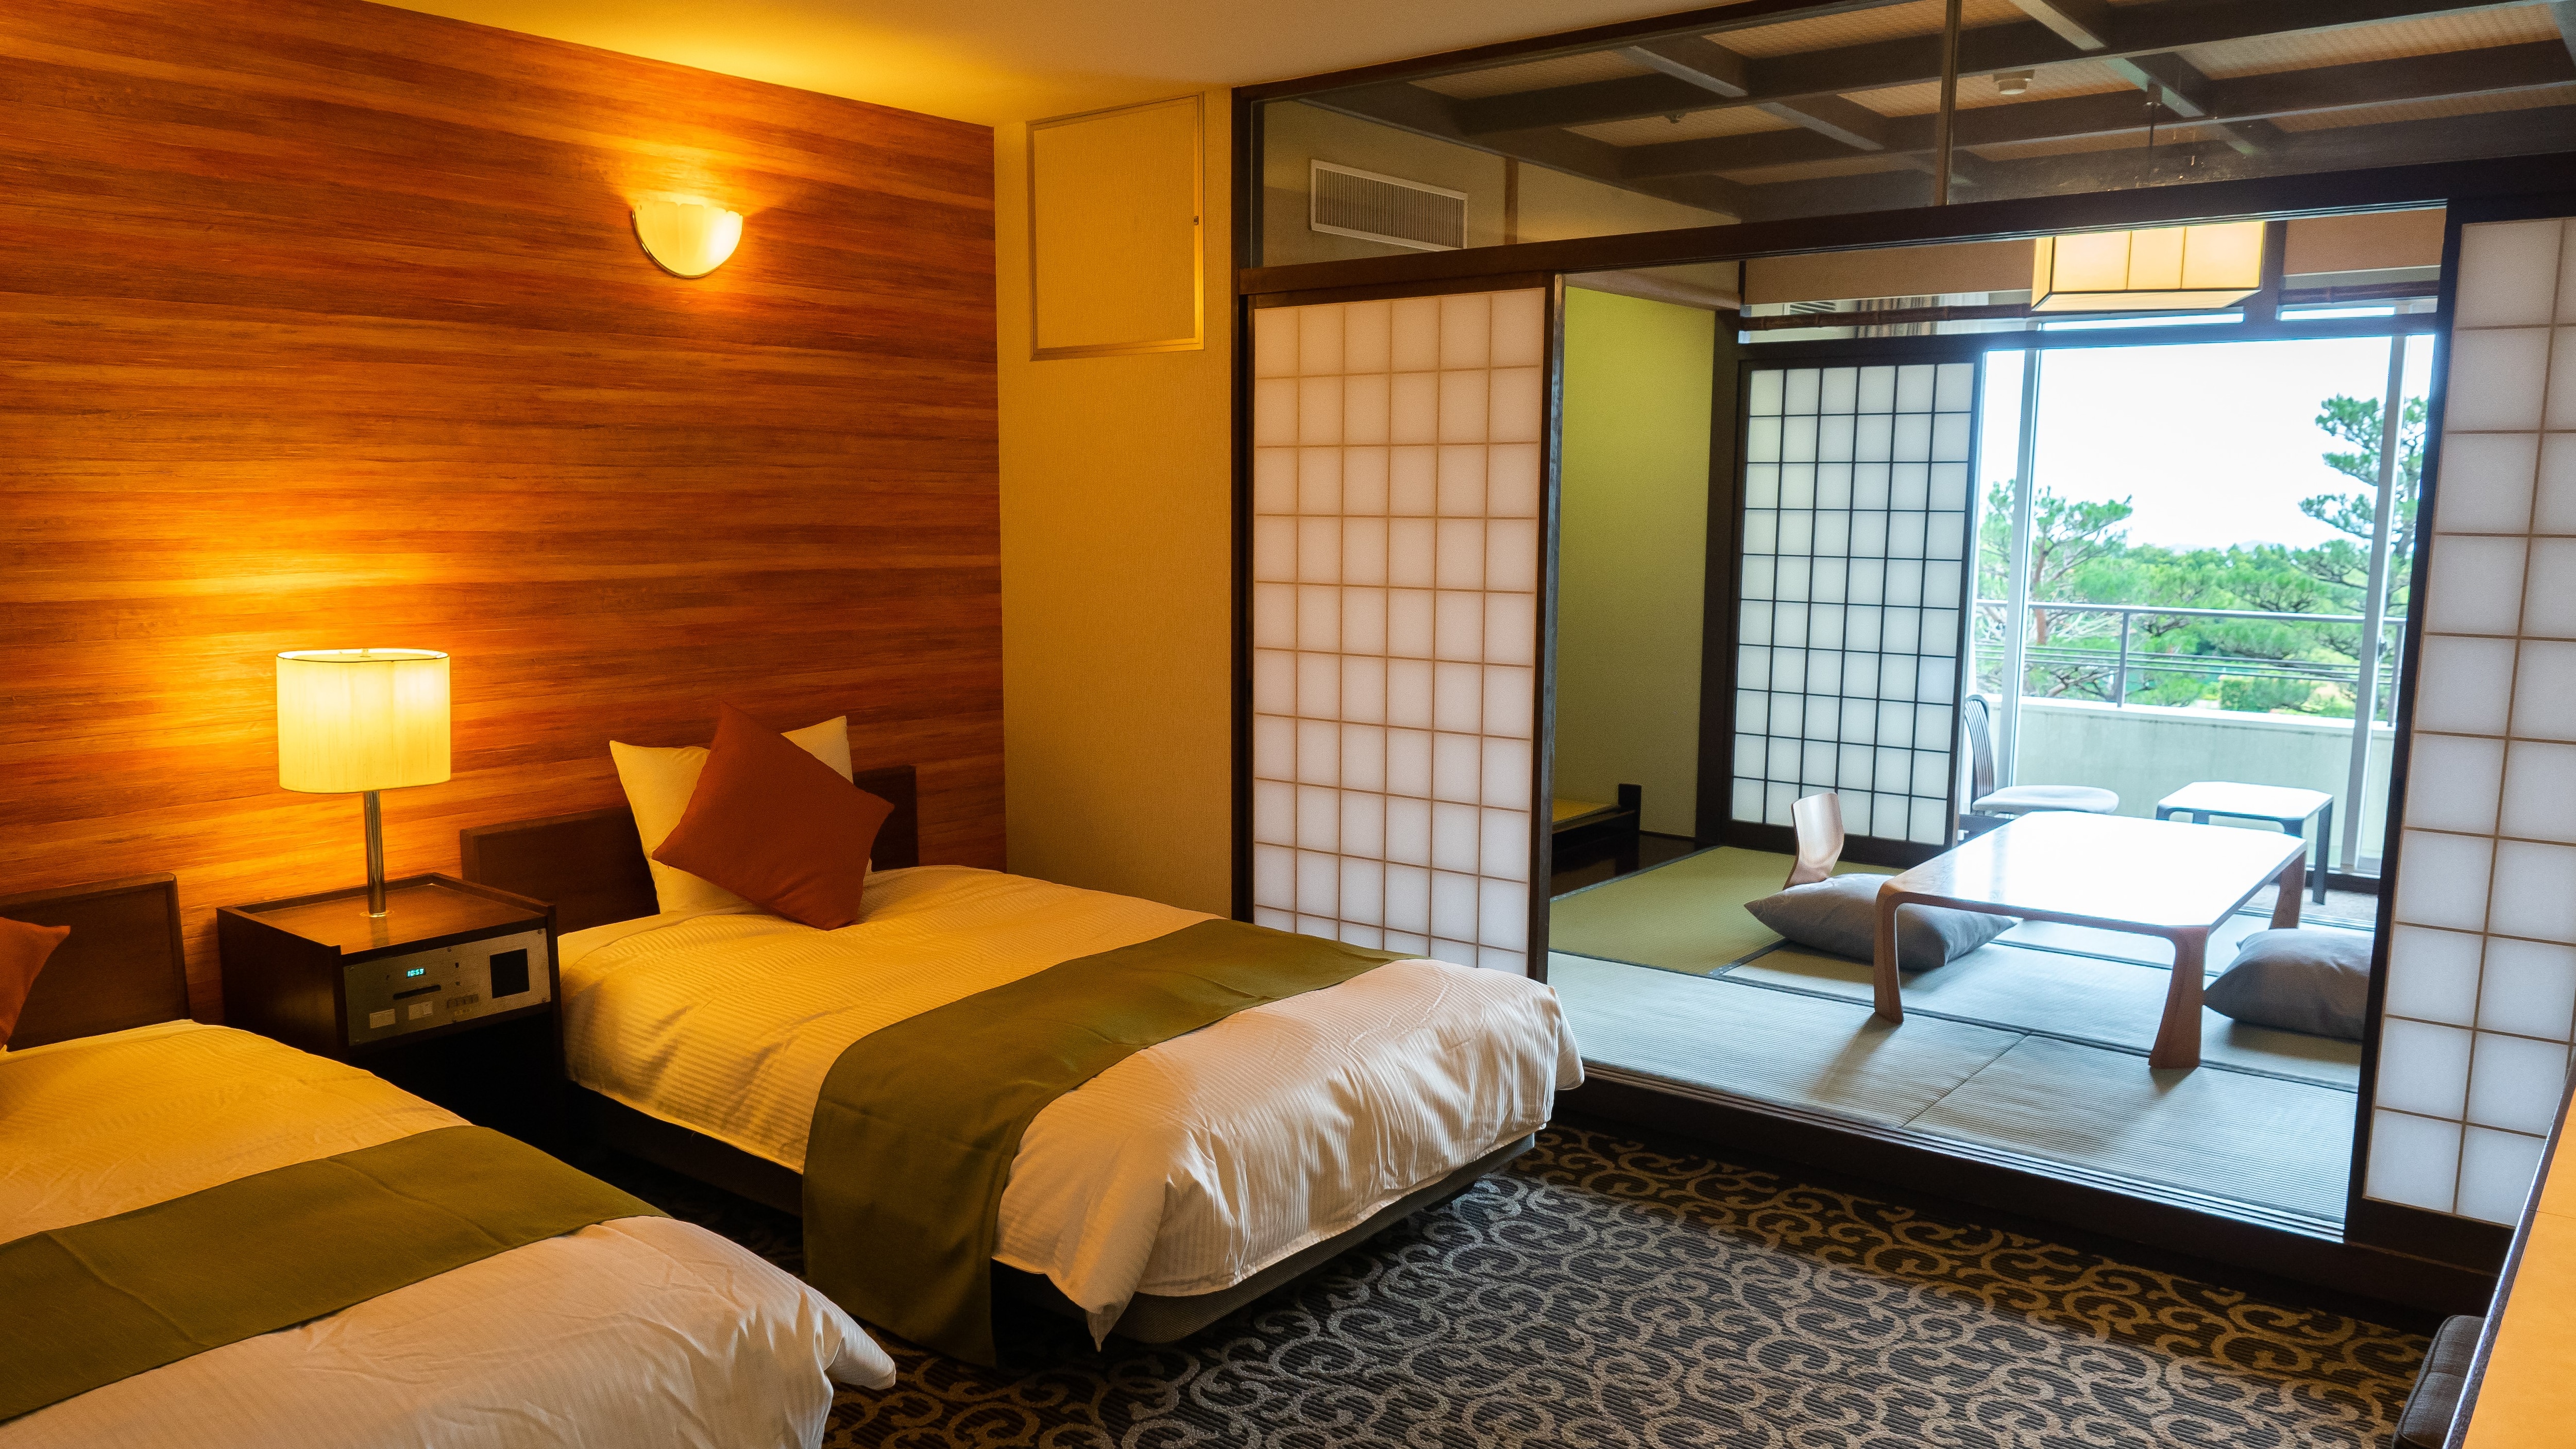 ห้องพักสไตล์ญี่ปุ่น-ตะวันตก ปลอดบุหรี่ (ห้องเซมิดับเบิล 2 เตียง + ห้องปูเสื่อทาทามิ 6 ห้อง ชั้น 1)